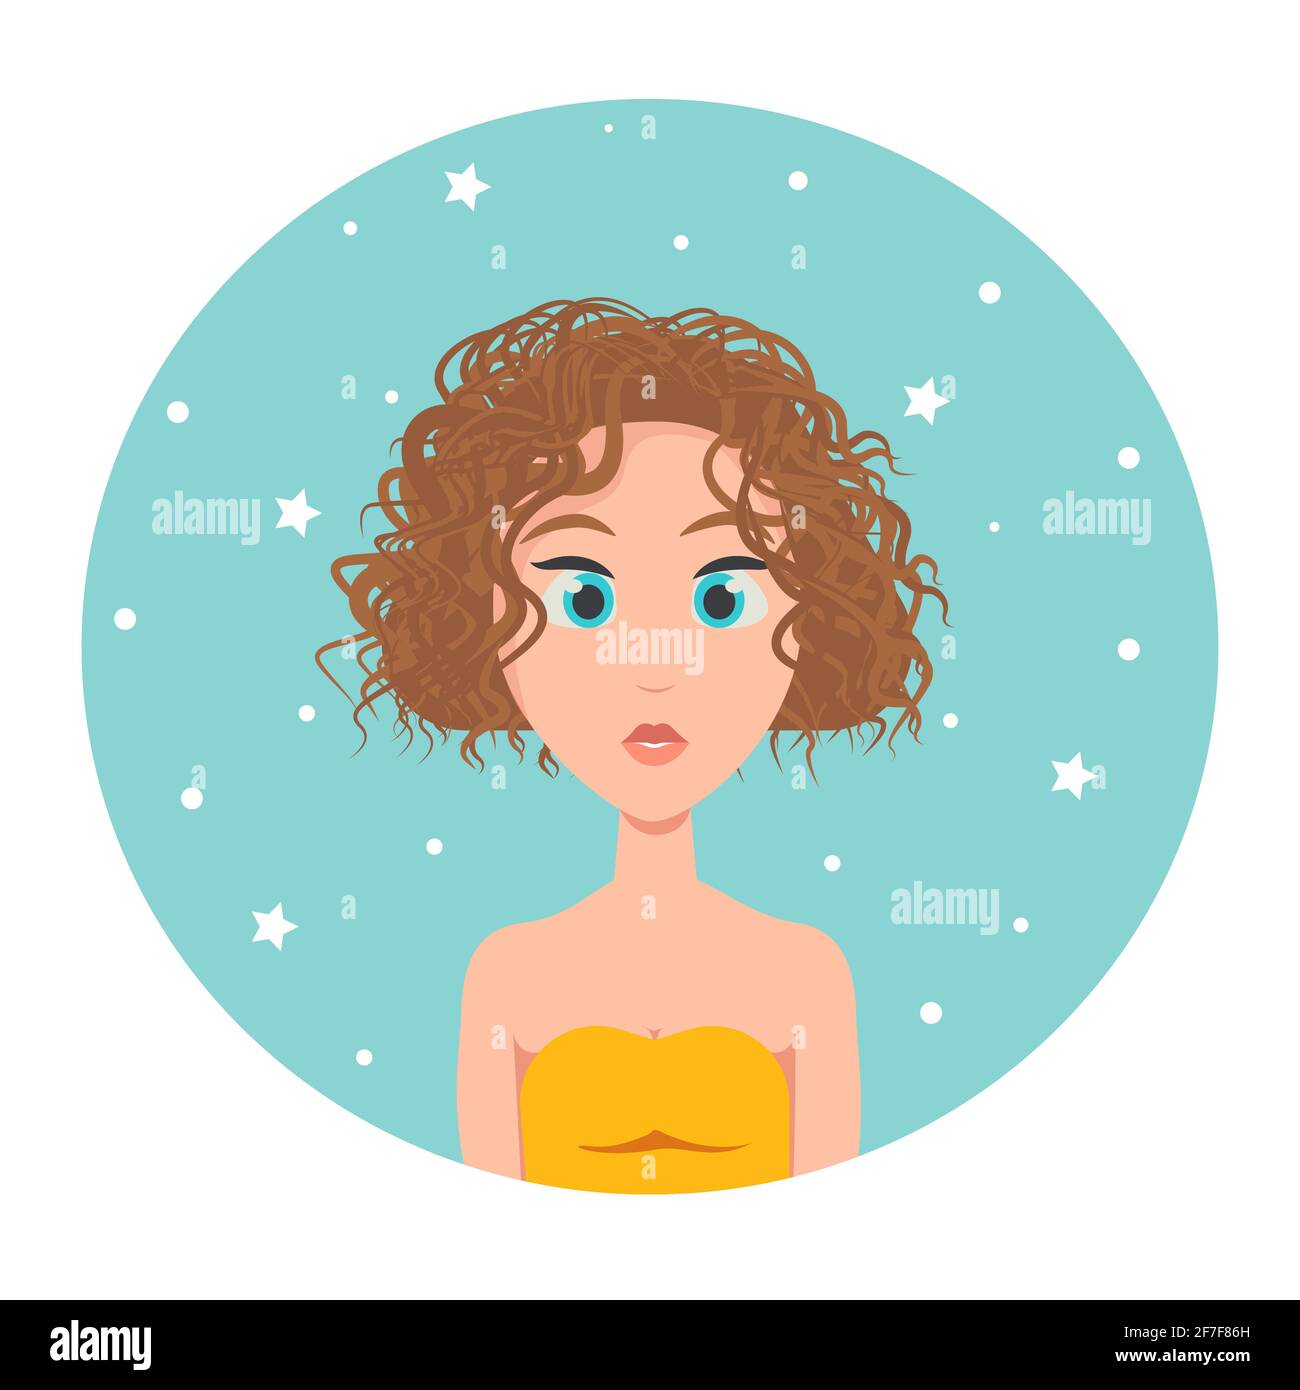 Avatar eines rothaarigen Mädchens mit kurzem, quadratischem Haarschnitt und großen blauen Augen, Vektorgrafik im flachen Stil Stock Vektor